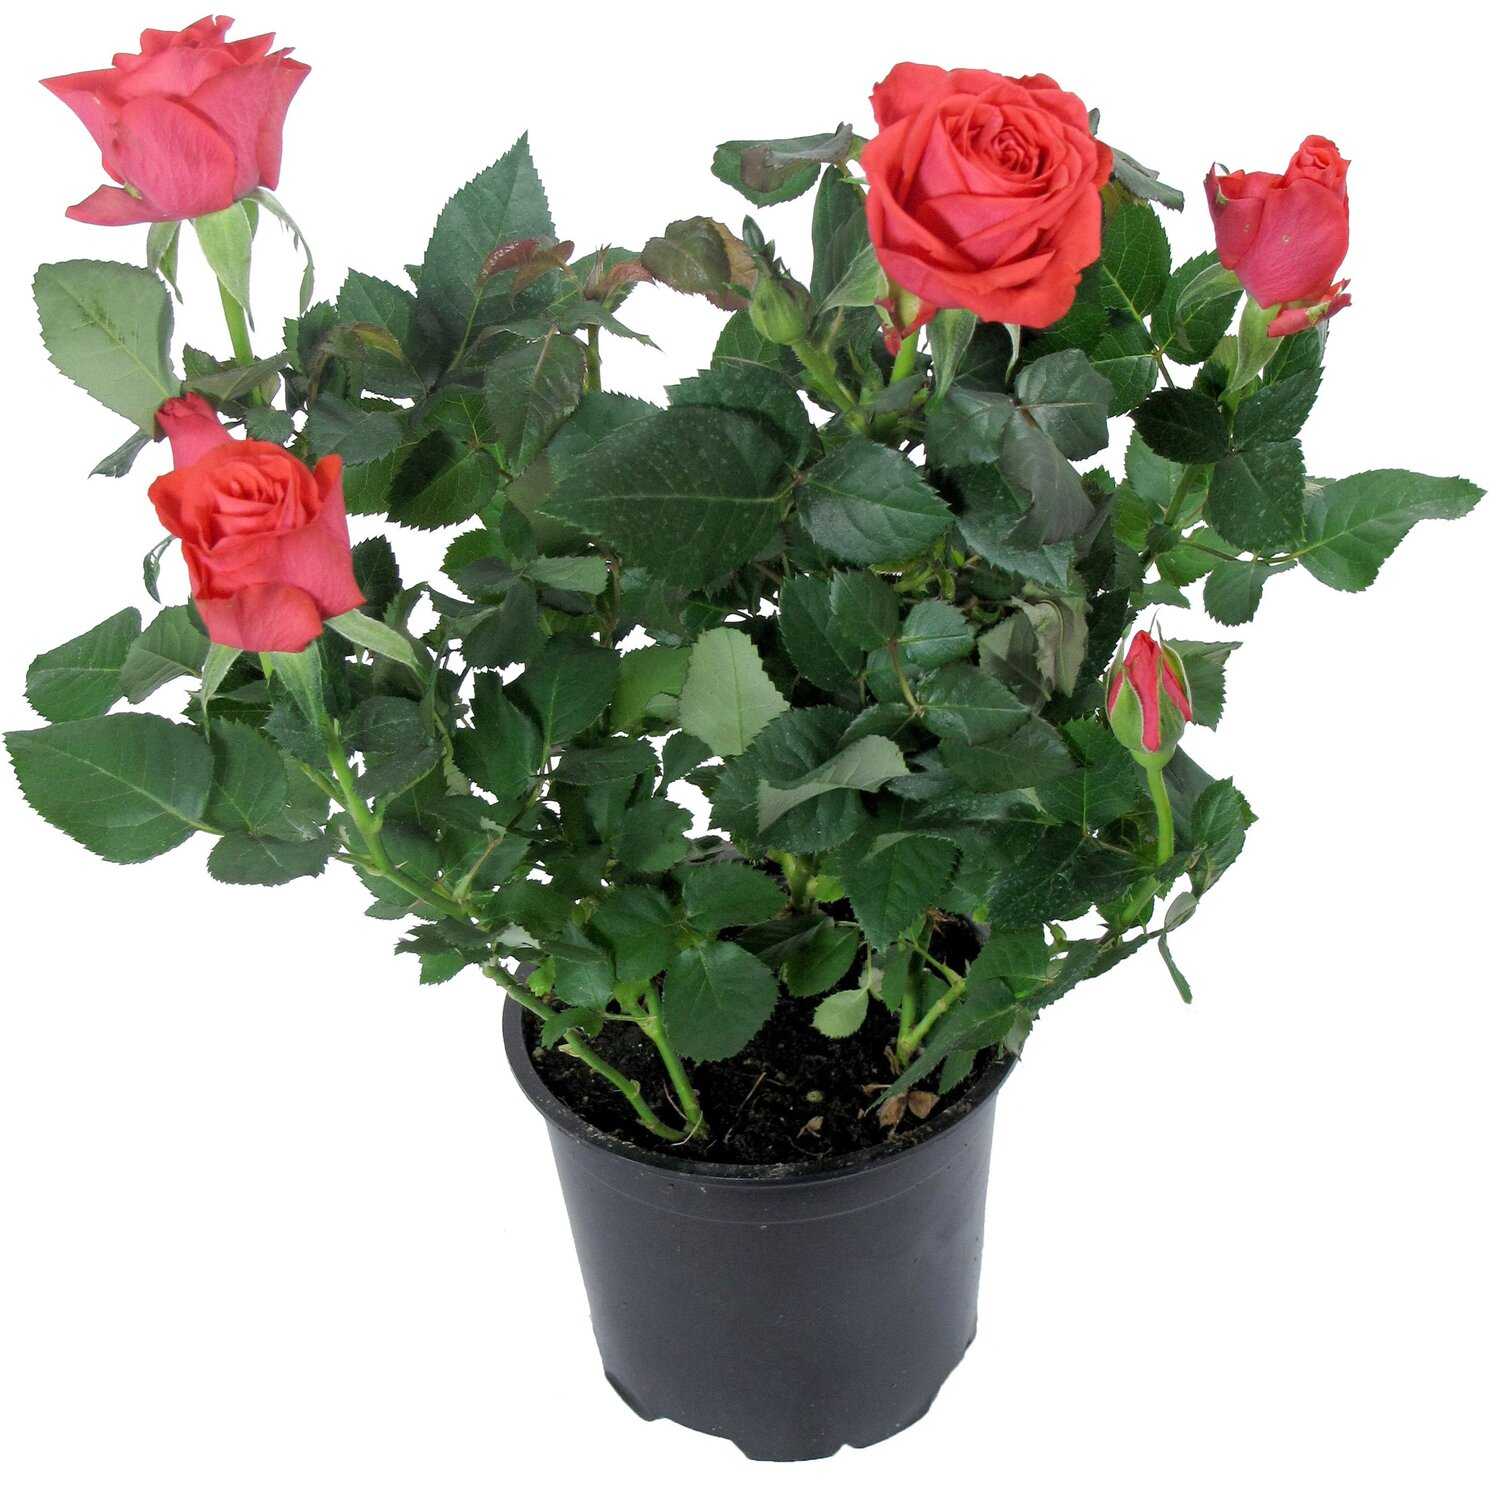 Как ухаживать за розами патио хит микс в домашних условиях и открытом грунте